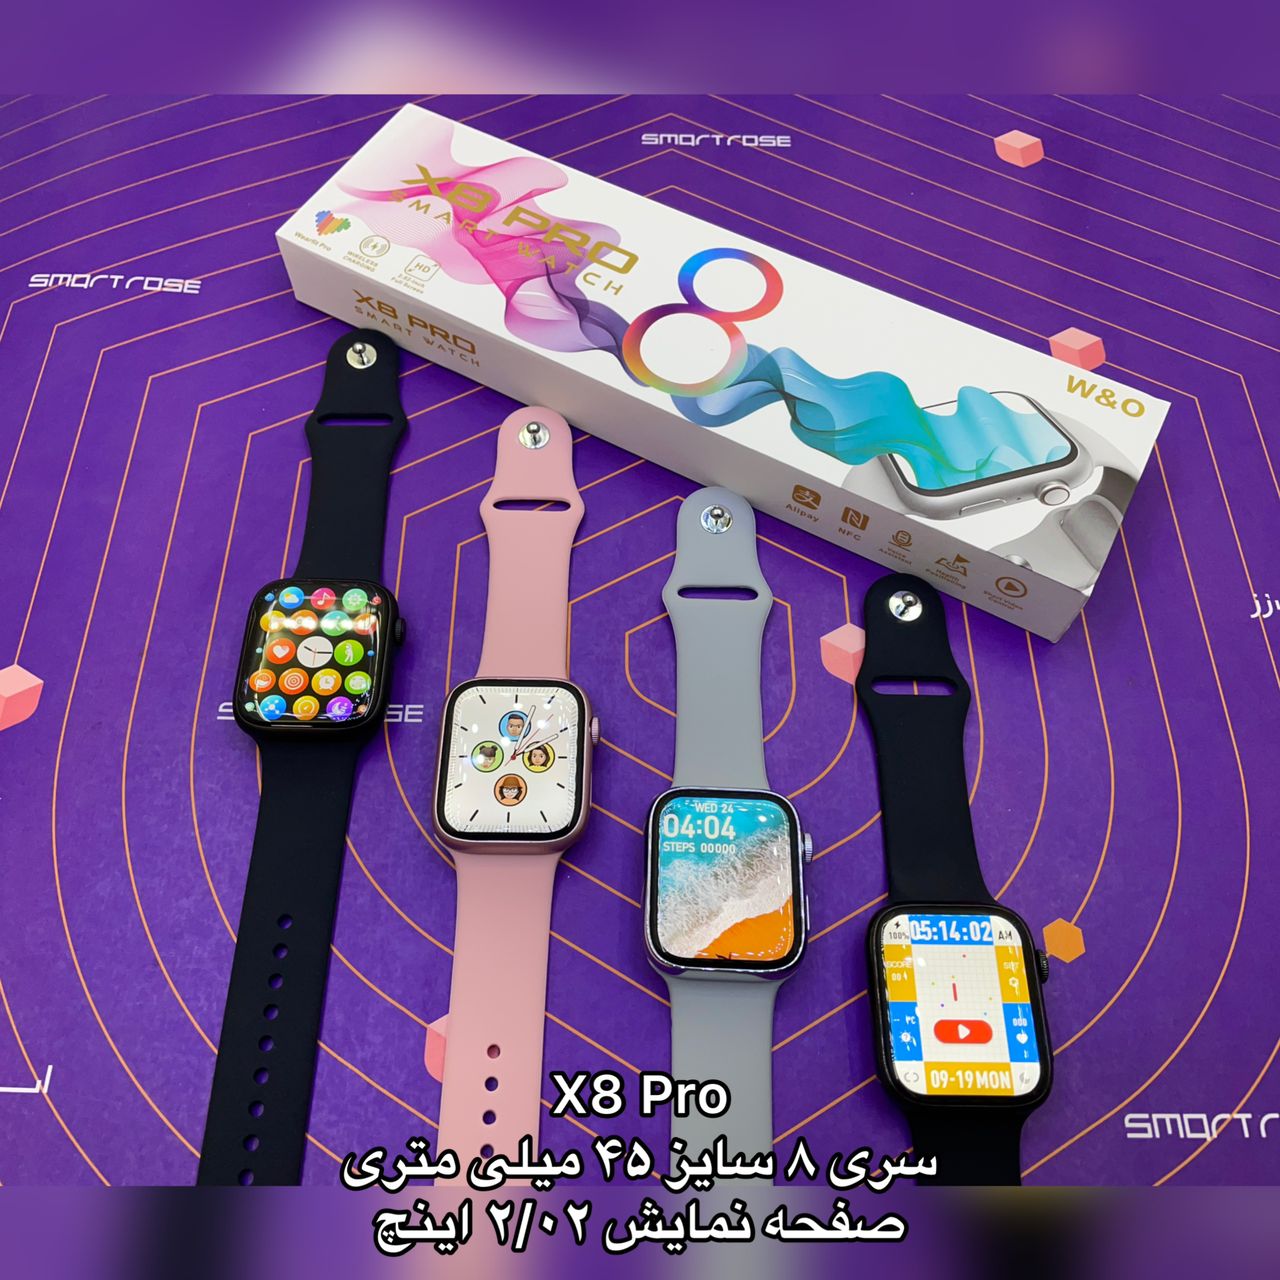 ساعت هوشمند طرح اپل واچ X8 PRO سری 8 اصلی و با گارانتی شرکتی اسمارت رز